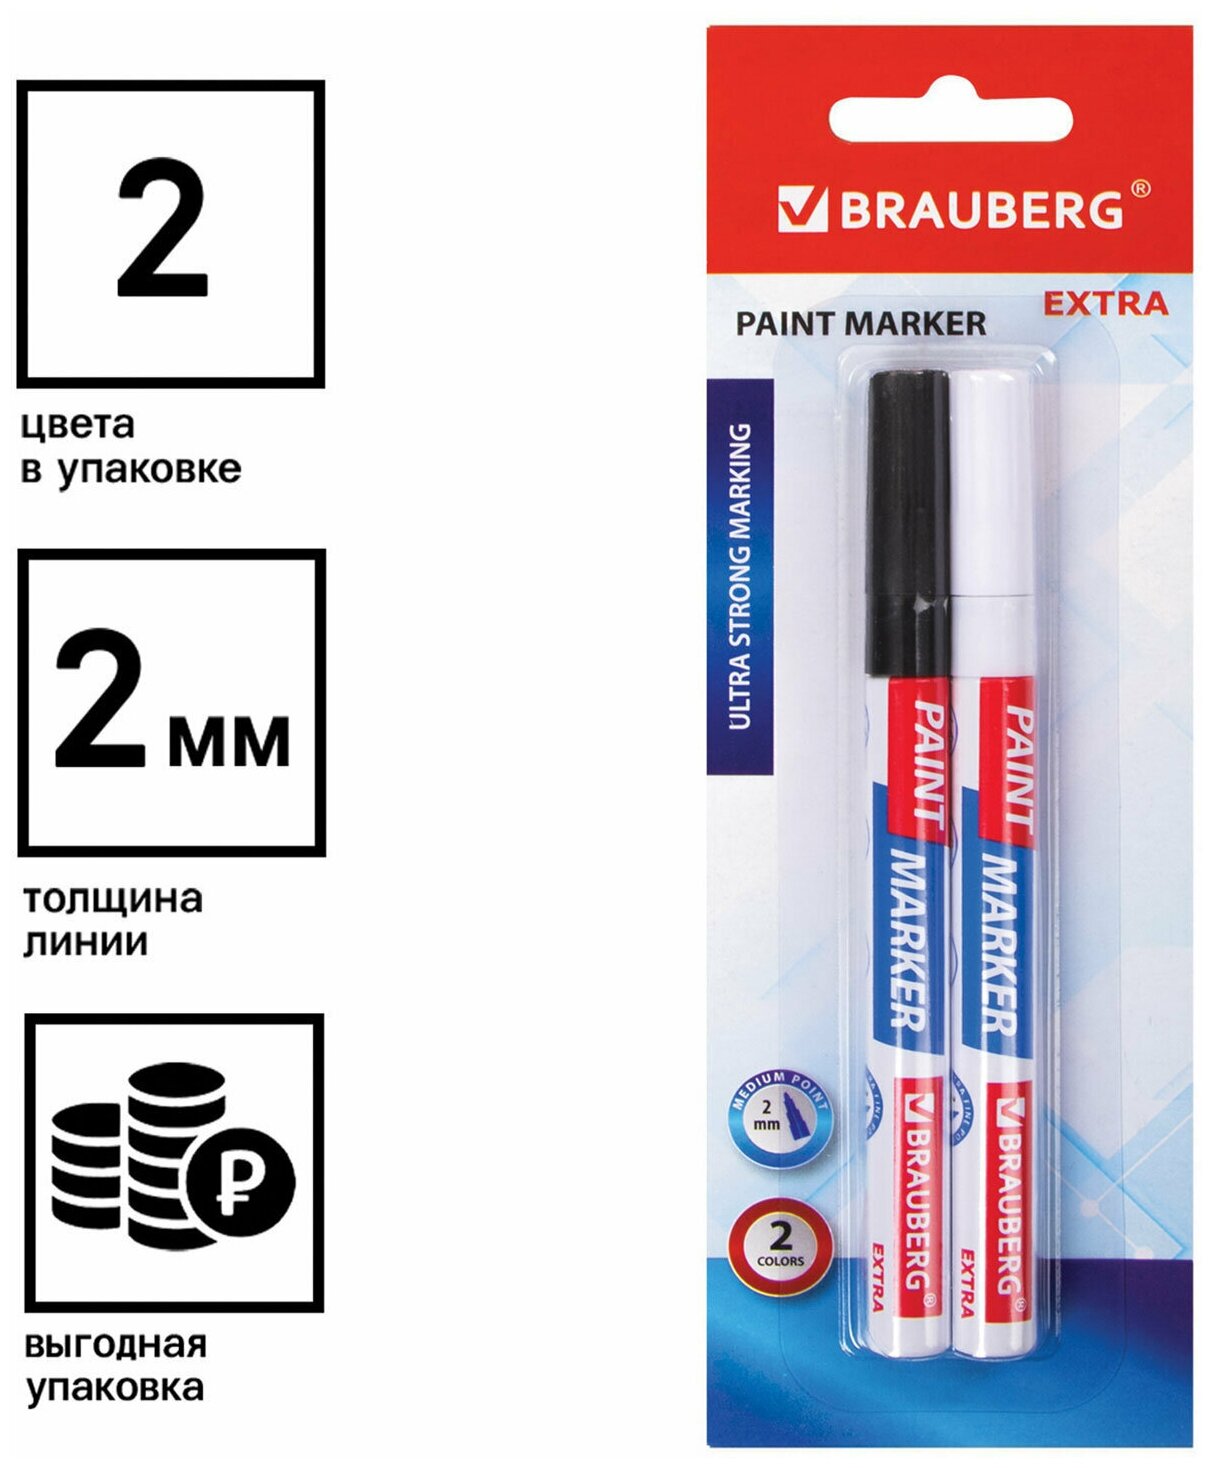 Маркер-краска лаковый EXTRA (paint marker) 2 мм, набор 2 цвета, белый/черный, усиленная нитро-основа, BRAUBERG, 151993